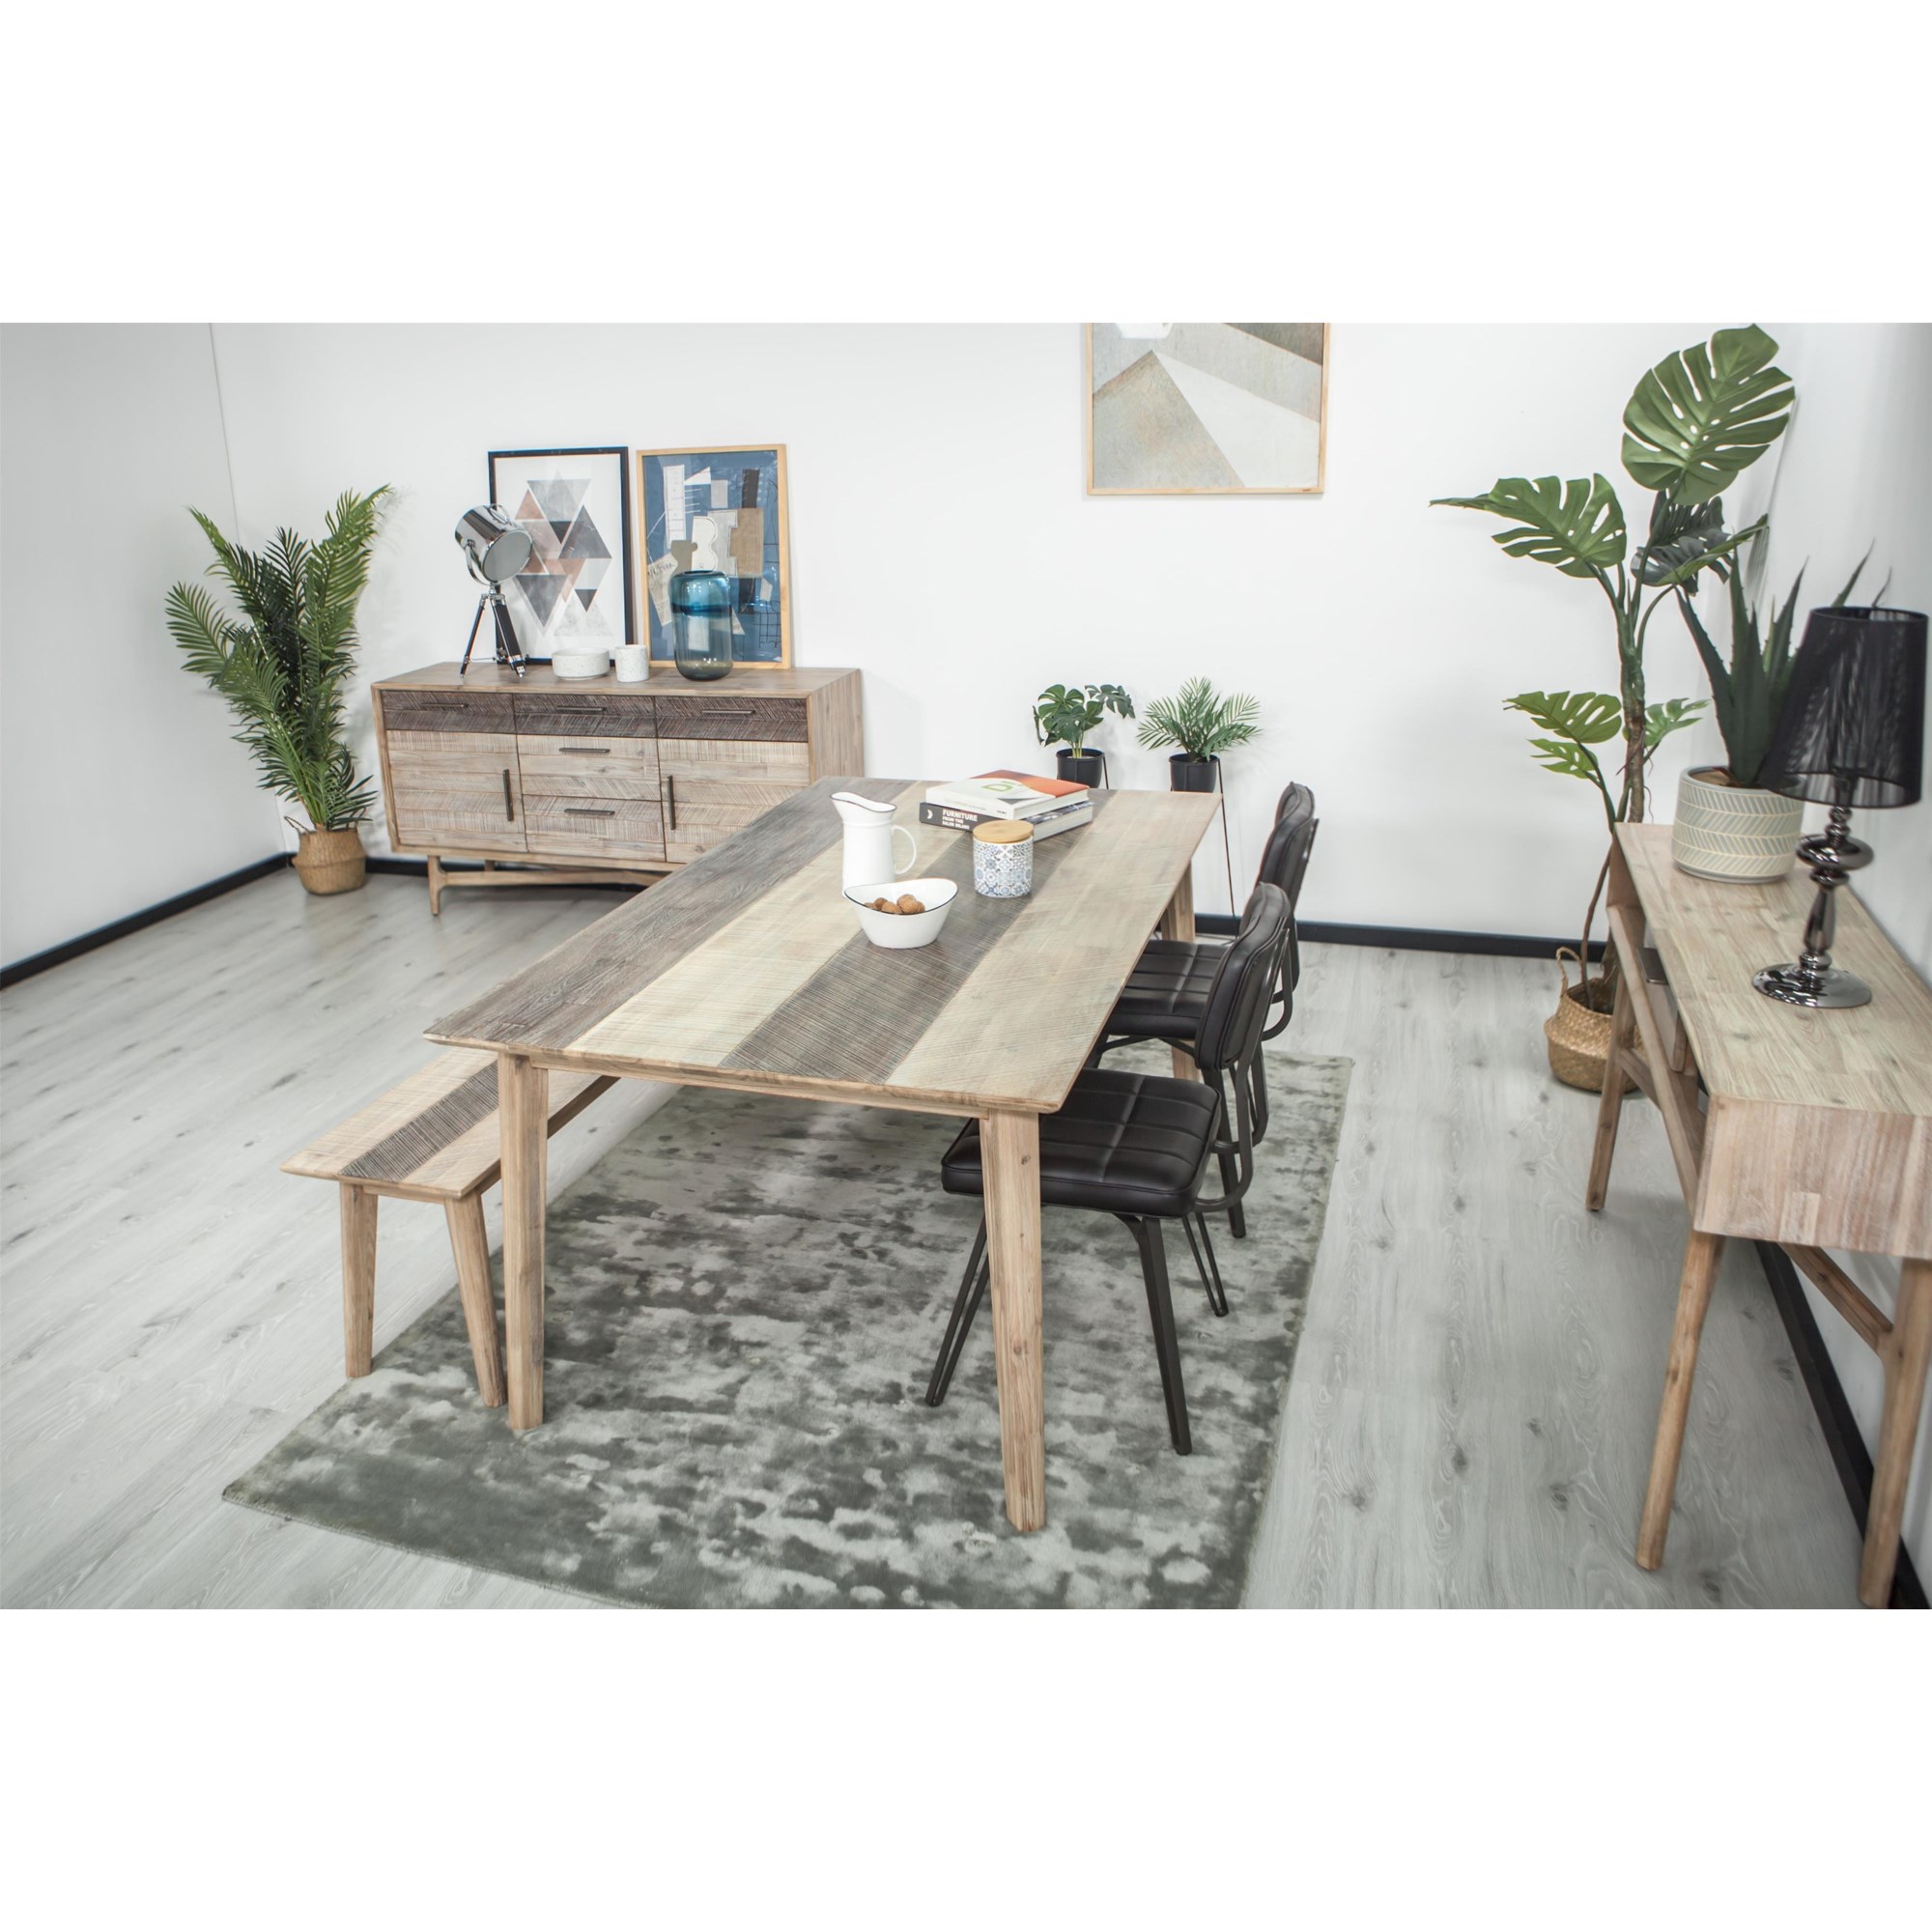 | DE-SAG-D01 Buffets | Sage Buffet Design Evolution Furniture HomeWorld